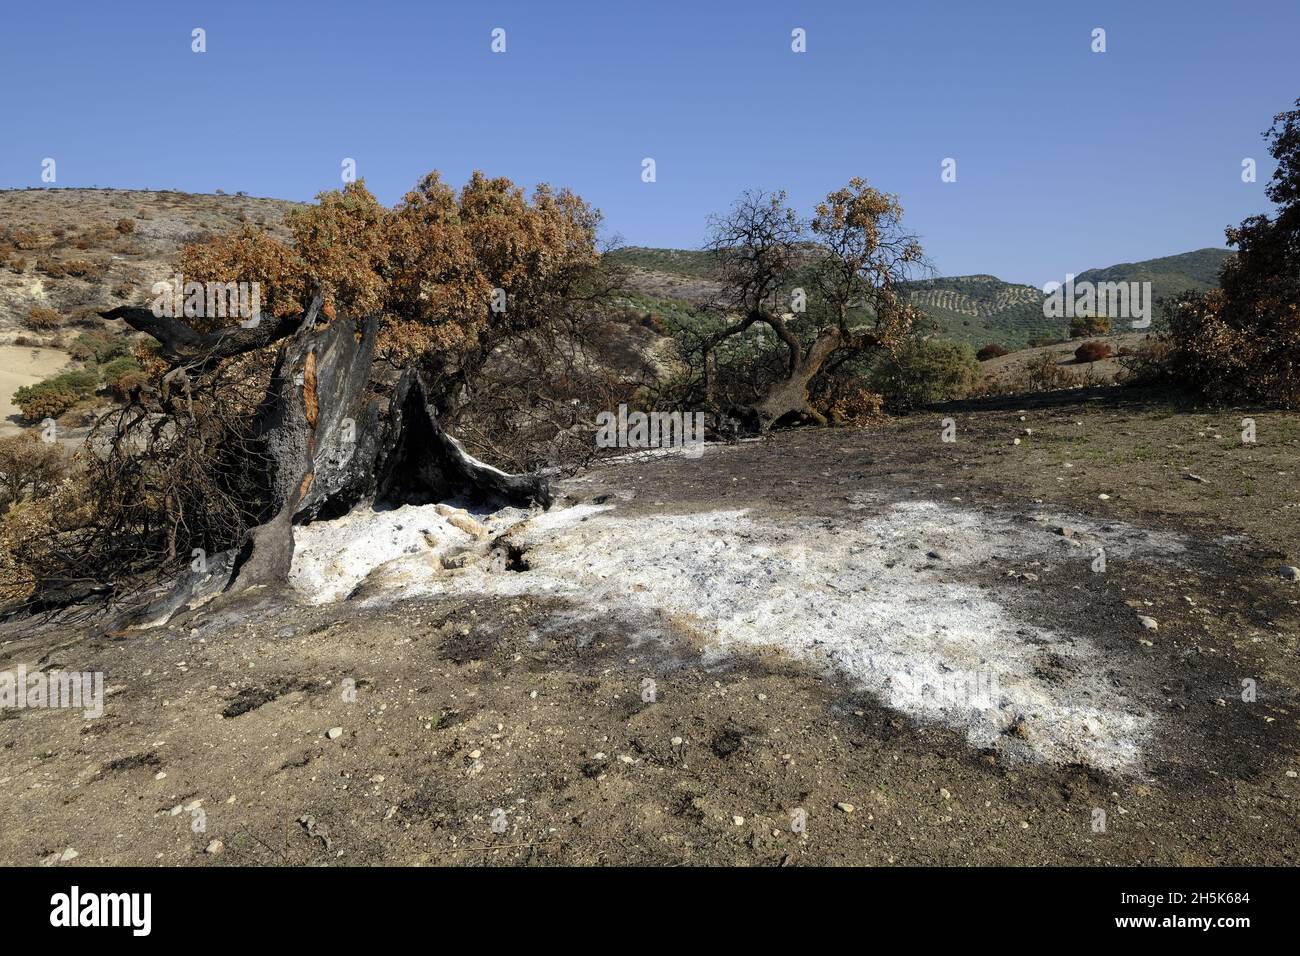 Vestiges d'un ancien chêne de Holm détruit dans un feu de forêt d'été.Algar, Parc naturel de Sierras Subbeticas, province de Cordoue, Andalousie, Espagne Banque D'Images